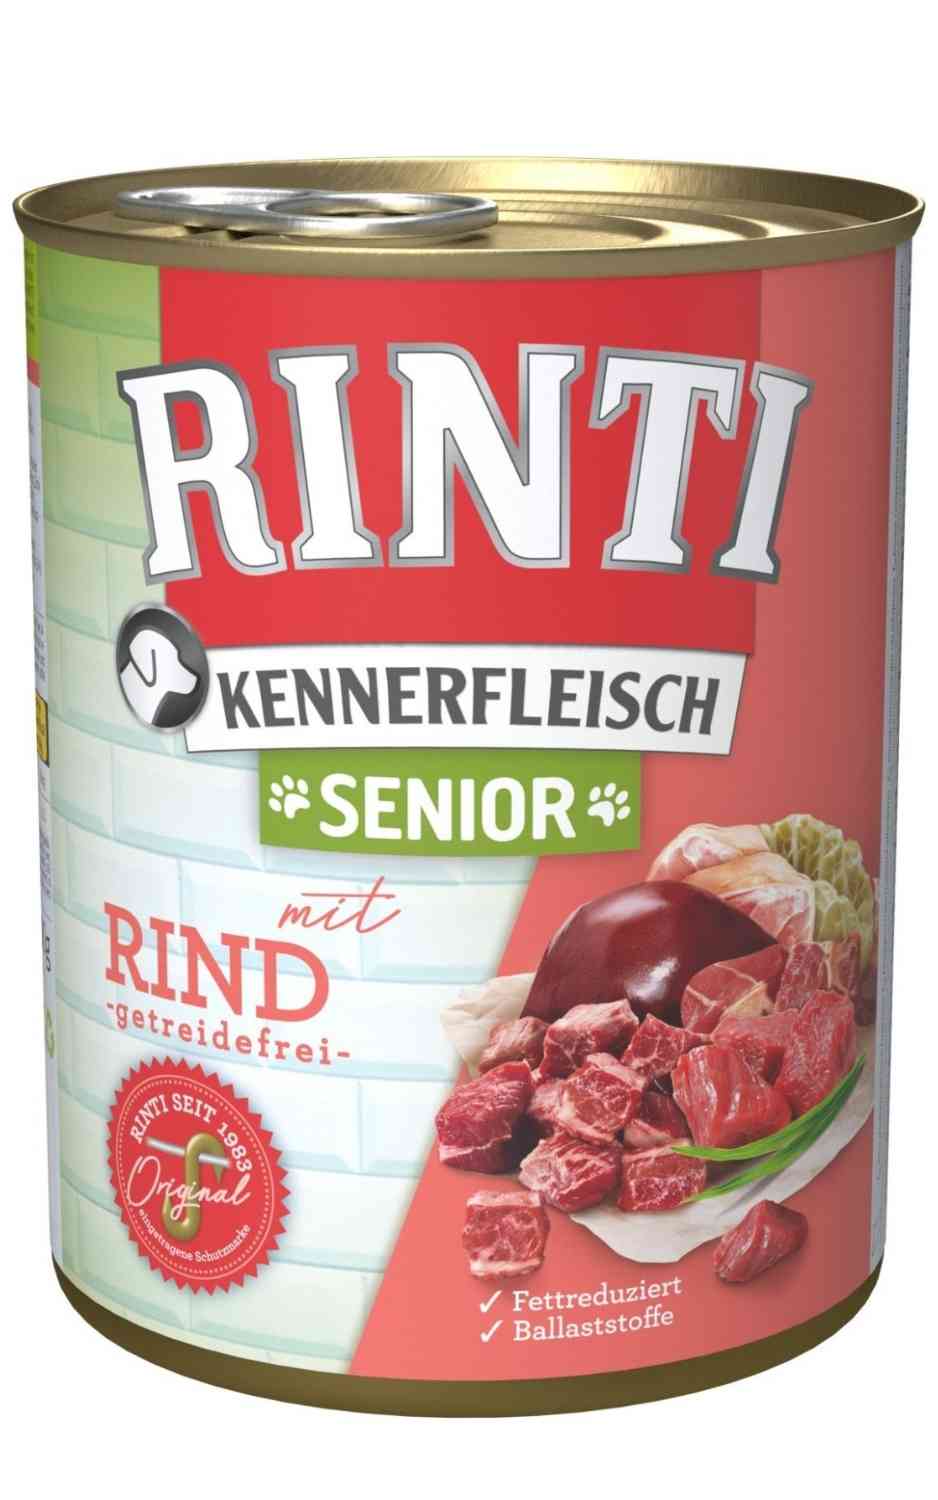 Rinti Kennerfleisch Senior Rind 400 g Dose